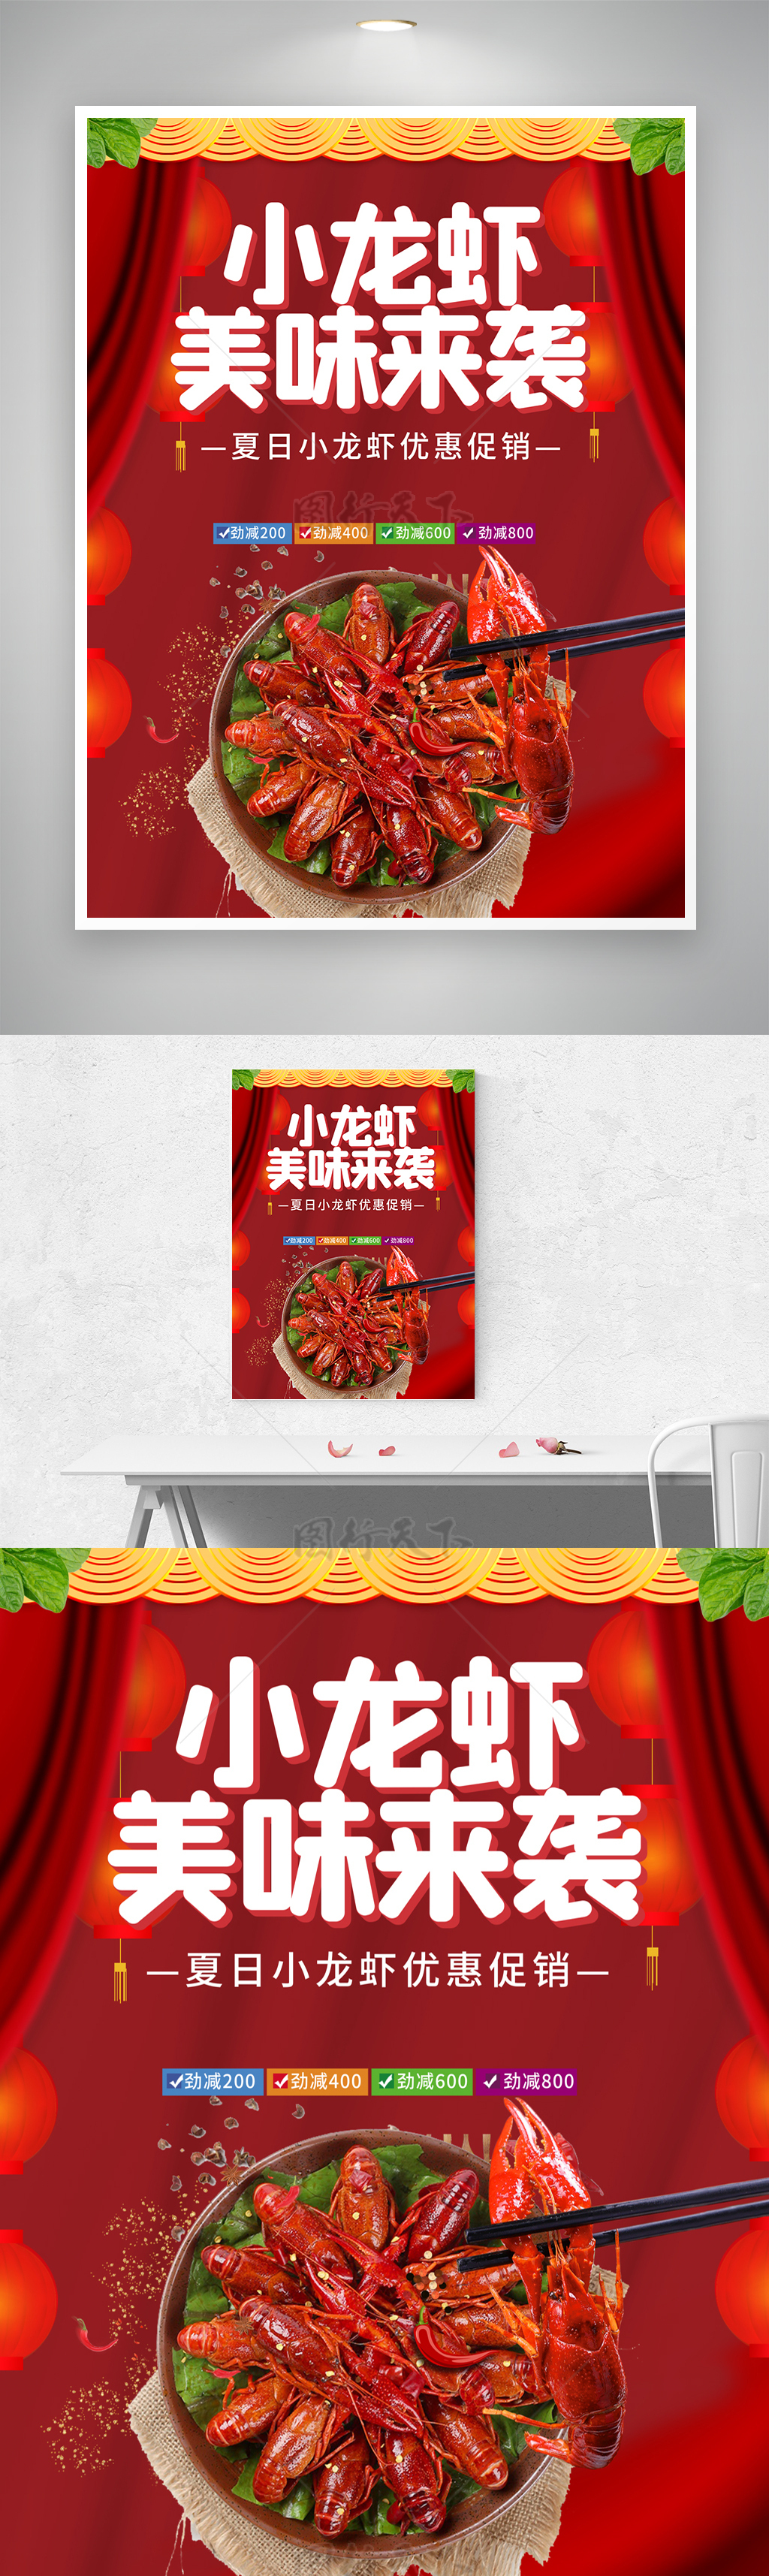 美味来袭优惠小龙虾宣传促销海报